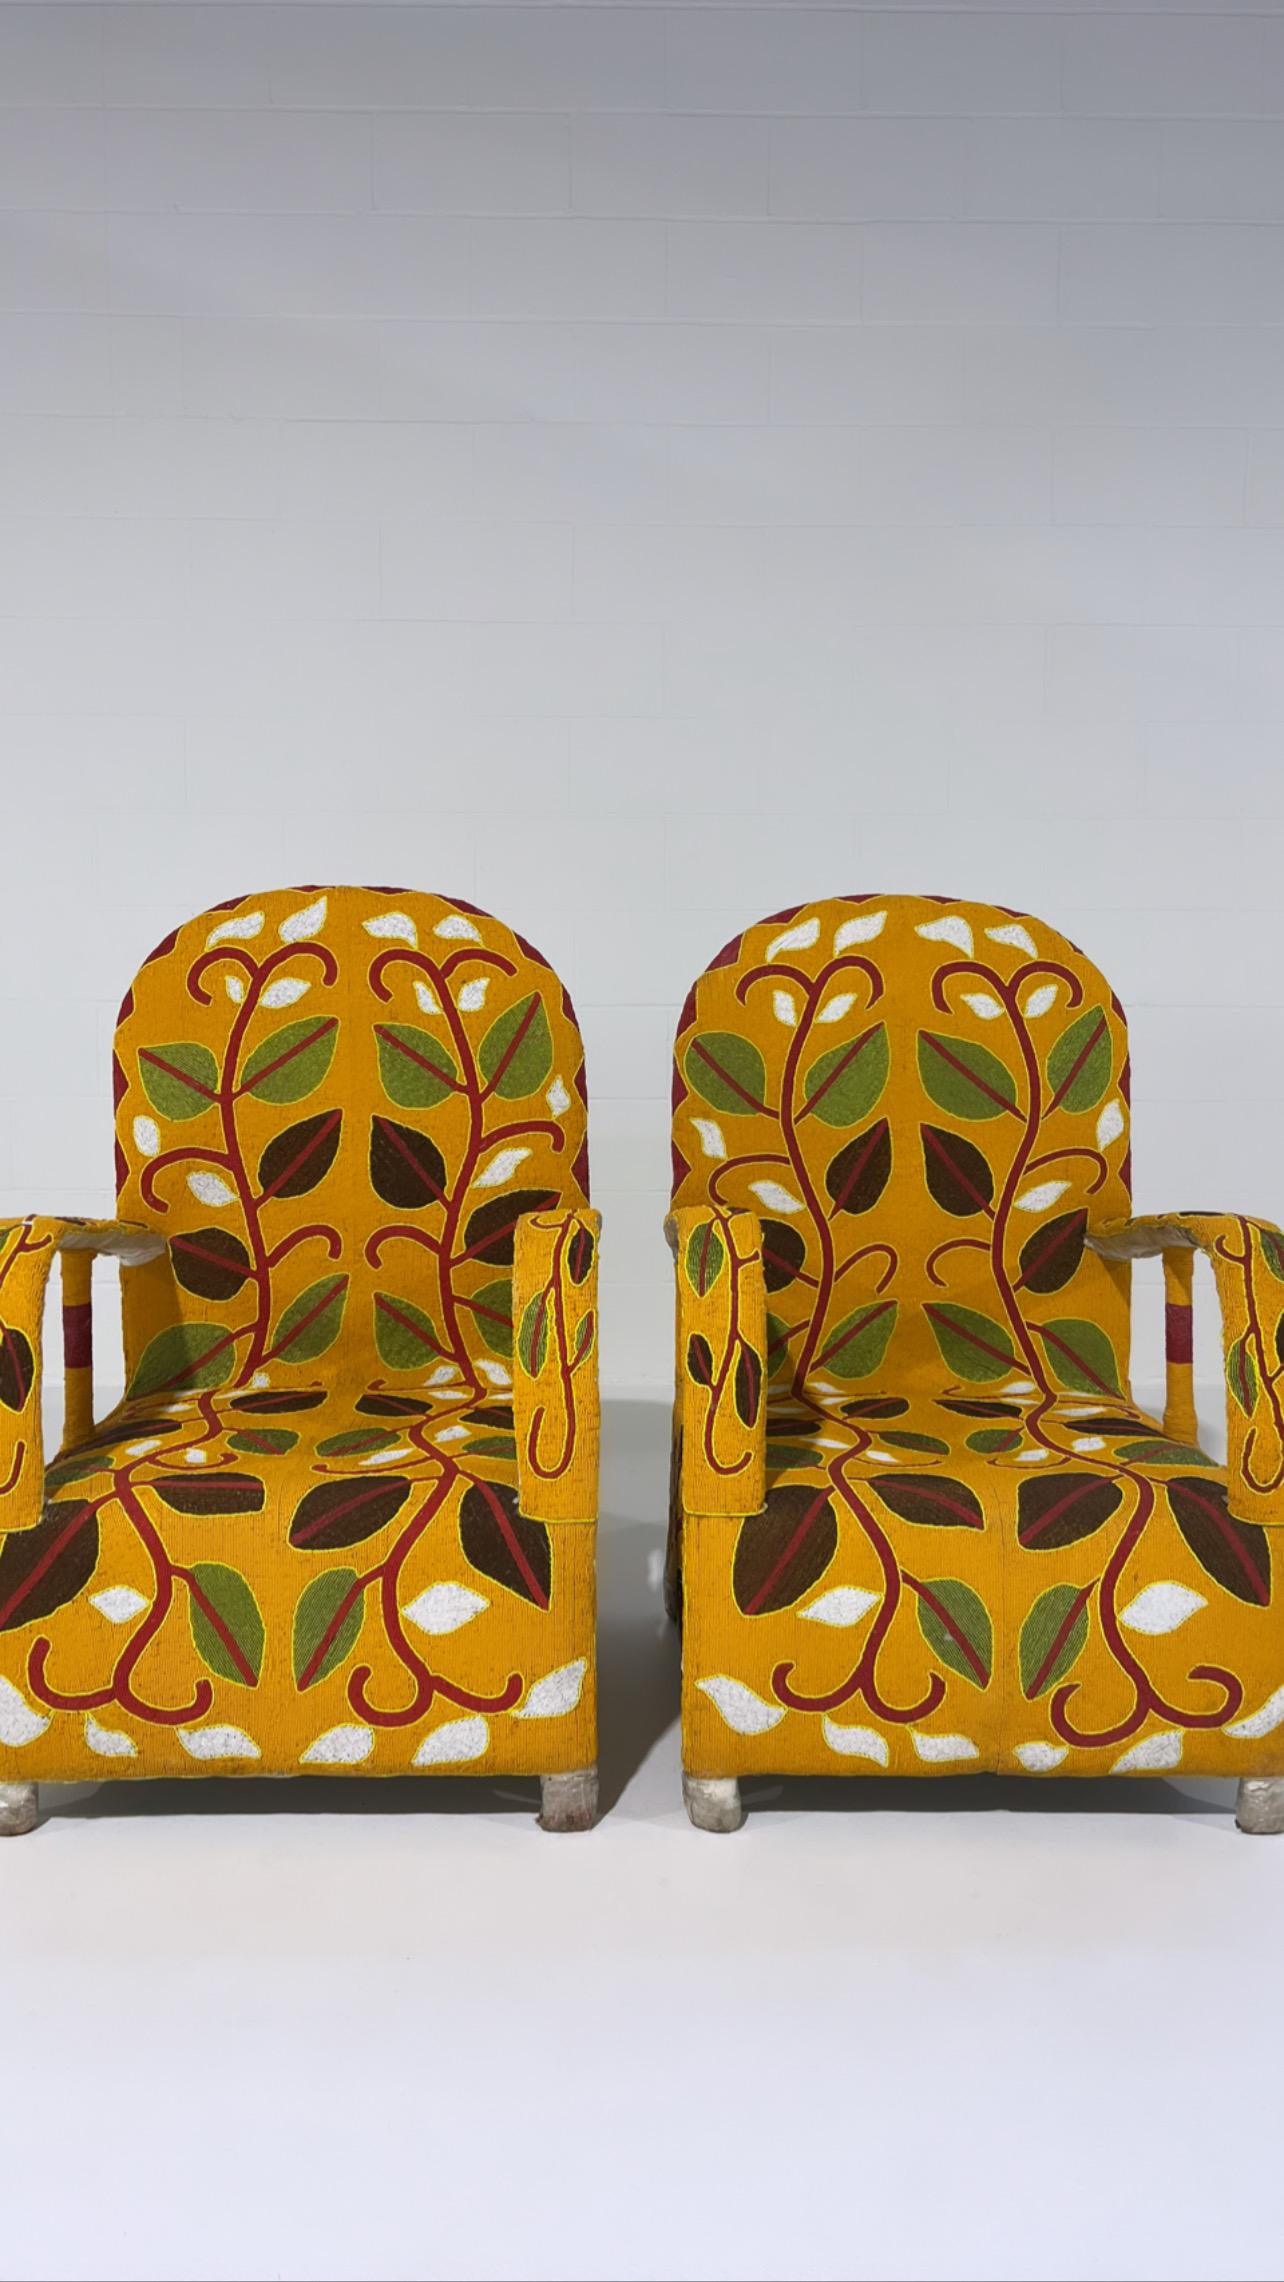 Afrikanischer Yoruba-Stuhl mit Perlen, mehrfarbig, 1 Stuhl verfügbar (Nigerianisch)